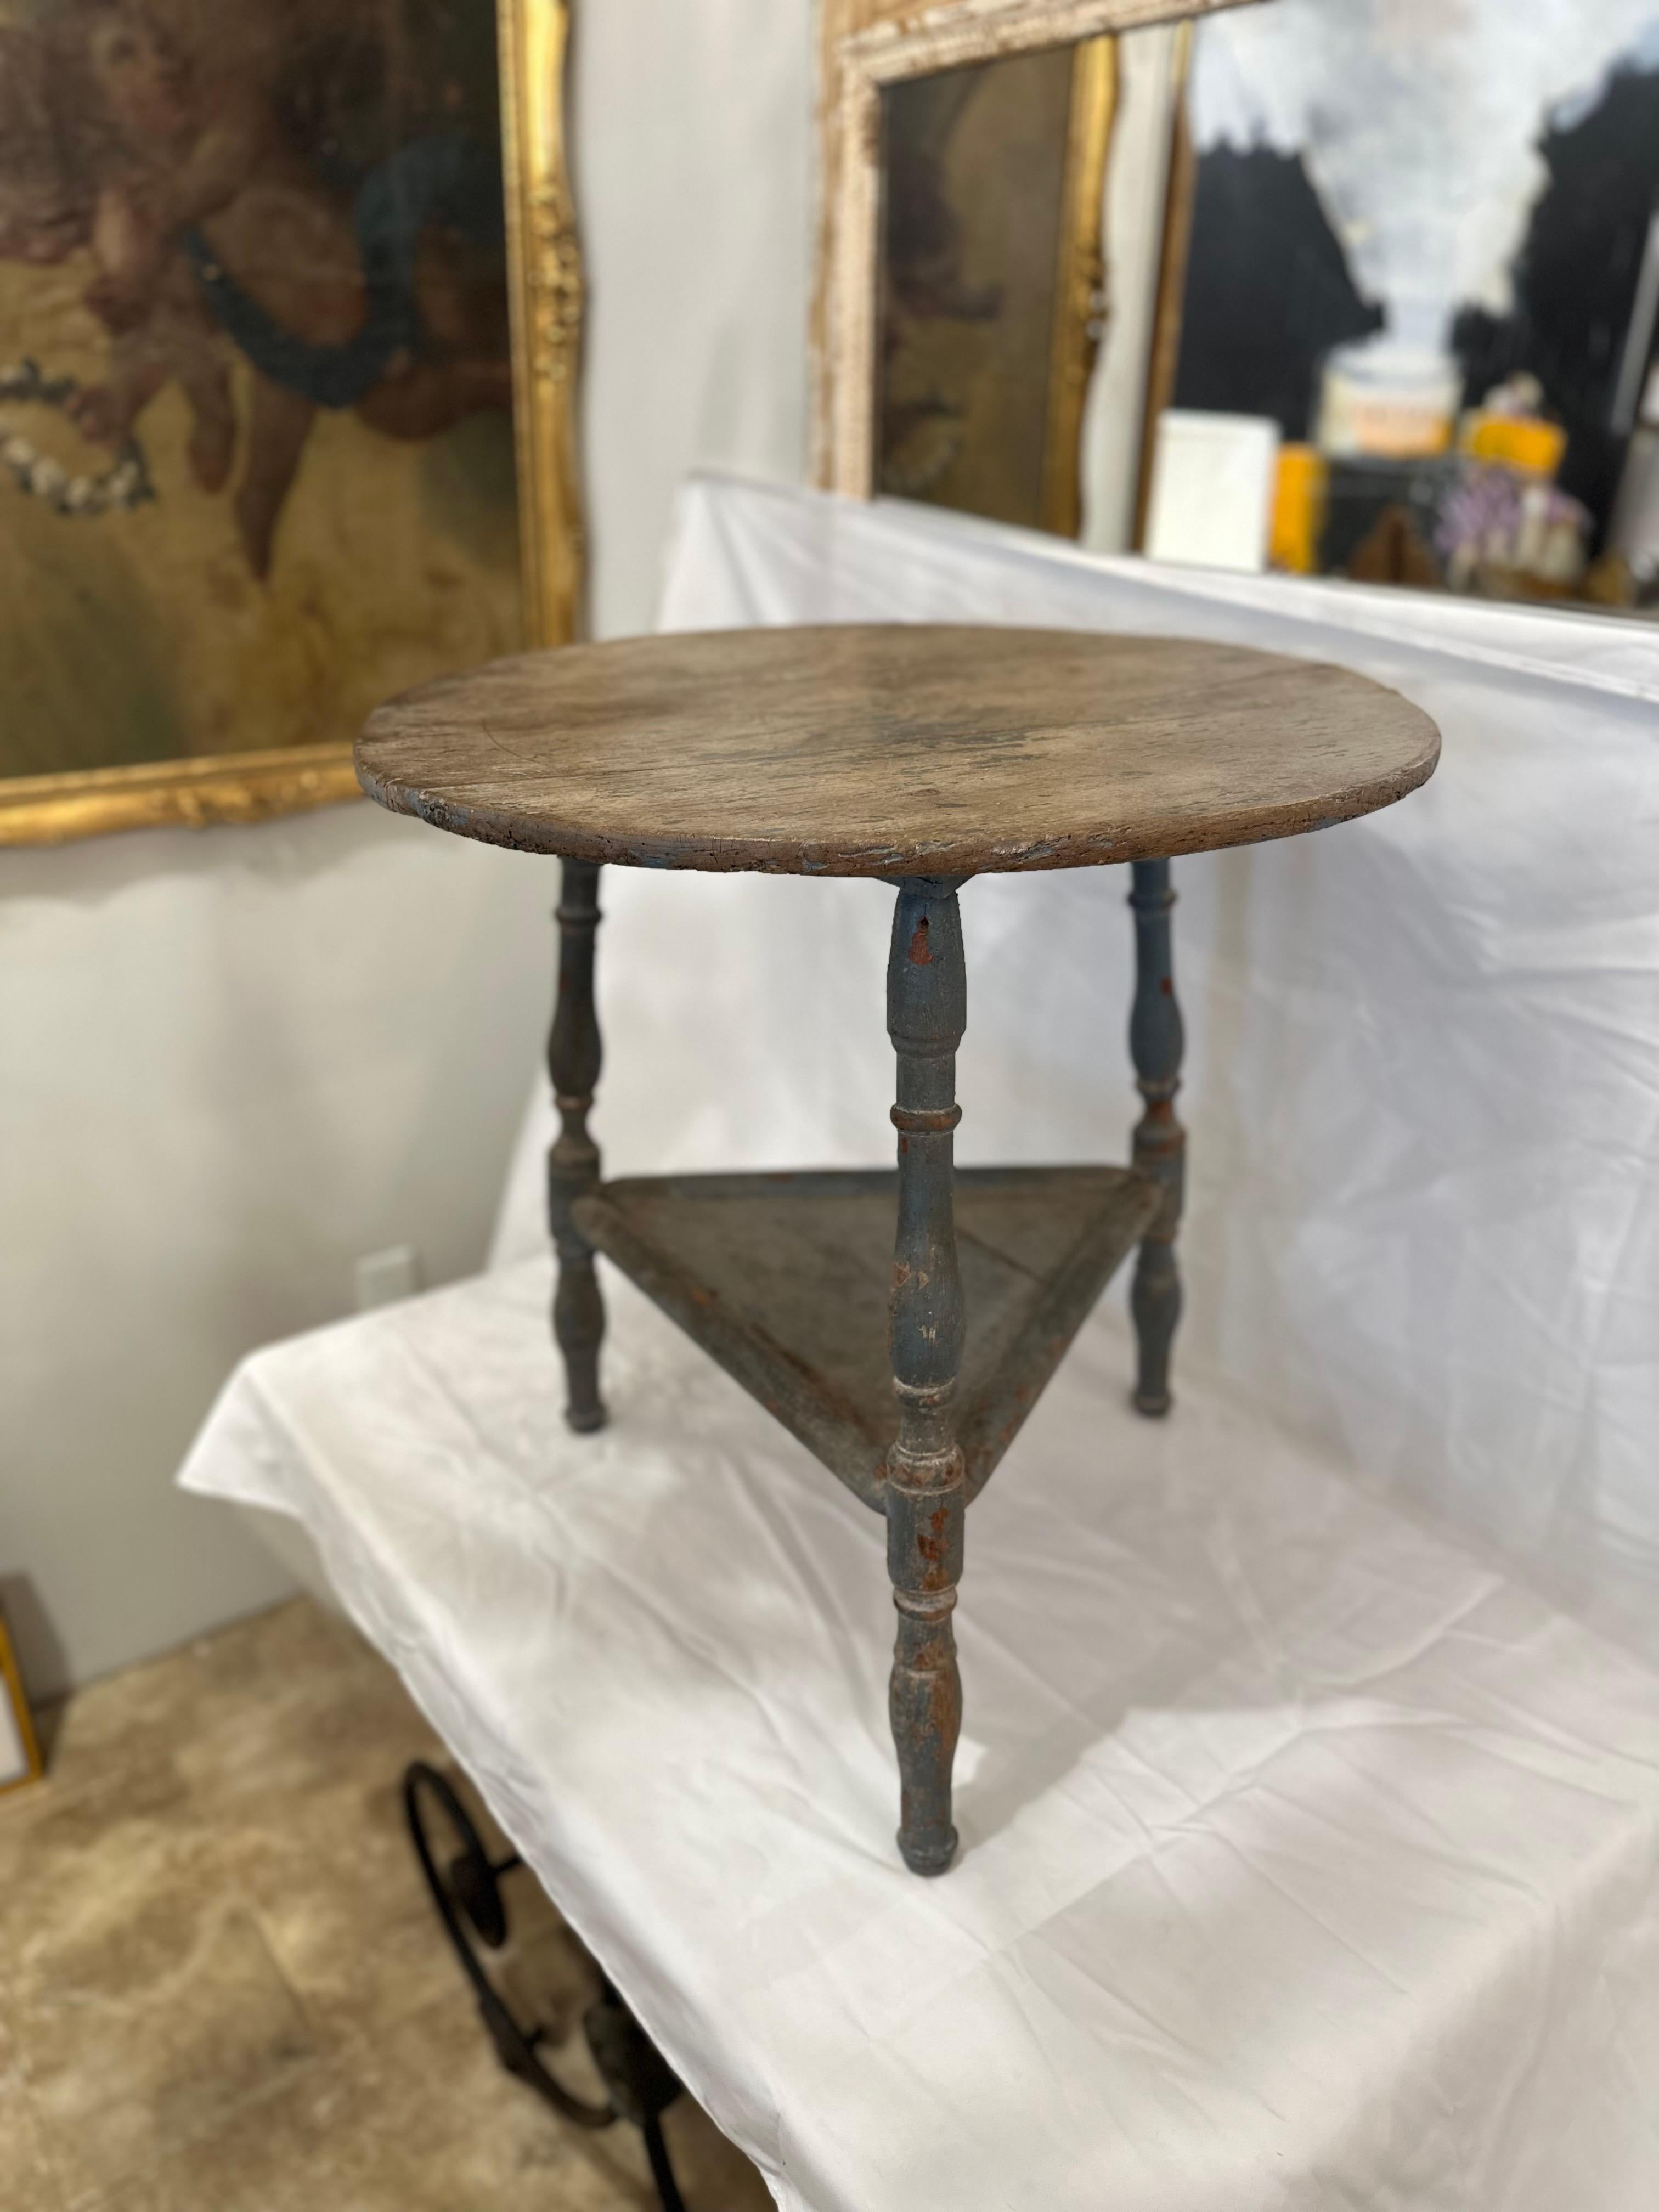 Der englische Original Paint Cricket Table aus dem 19. Jahrhundert ist ein charmantes Relikt vergangener Tage, das von Geschichte und Charakter geprägt ist. Dieser mit Sorgfalt und Liebe zum Detail gefertigte Tisch hat eine runde Platte, die von